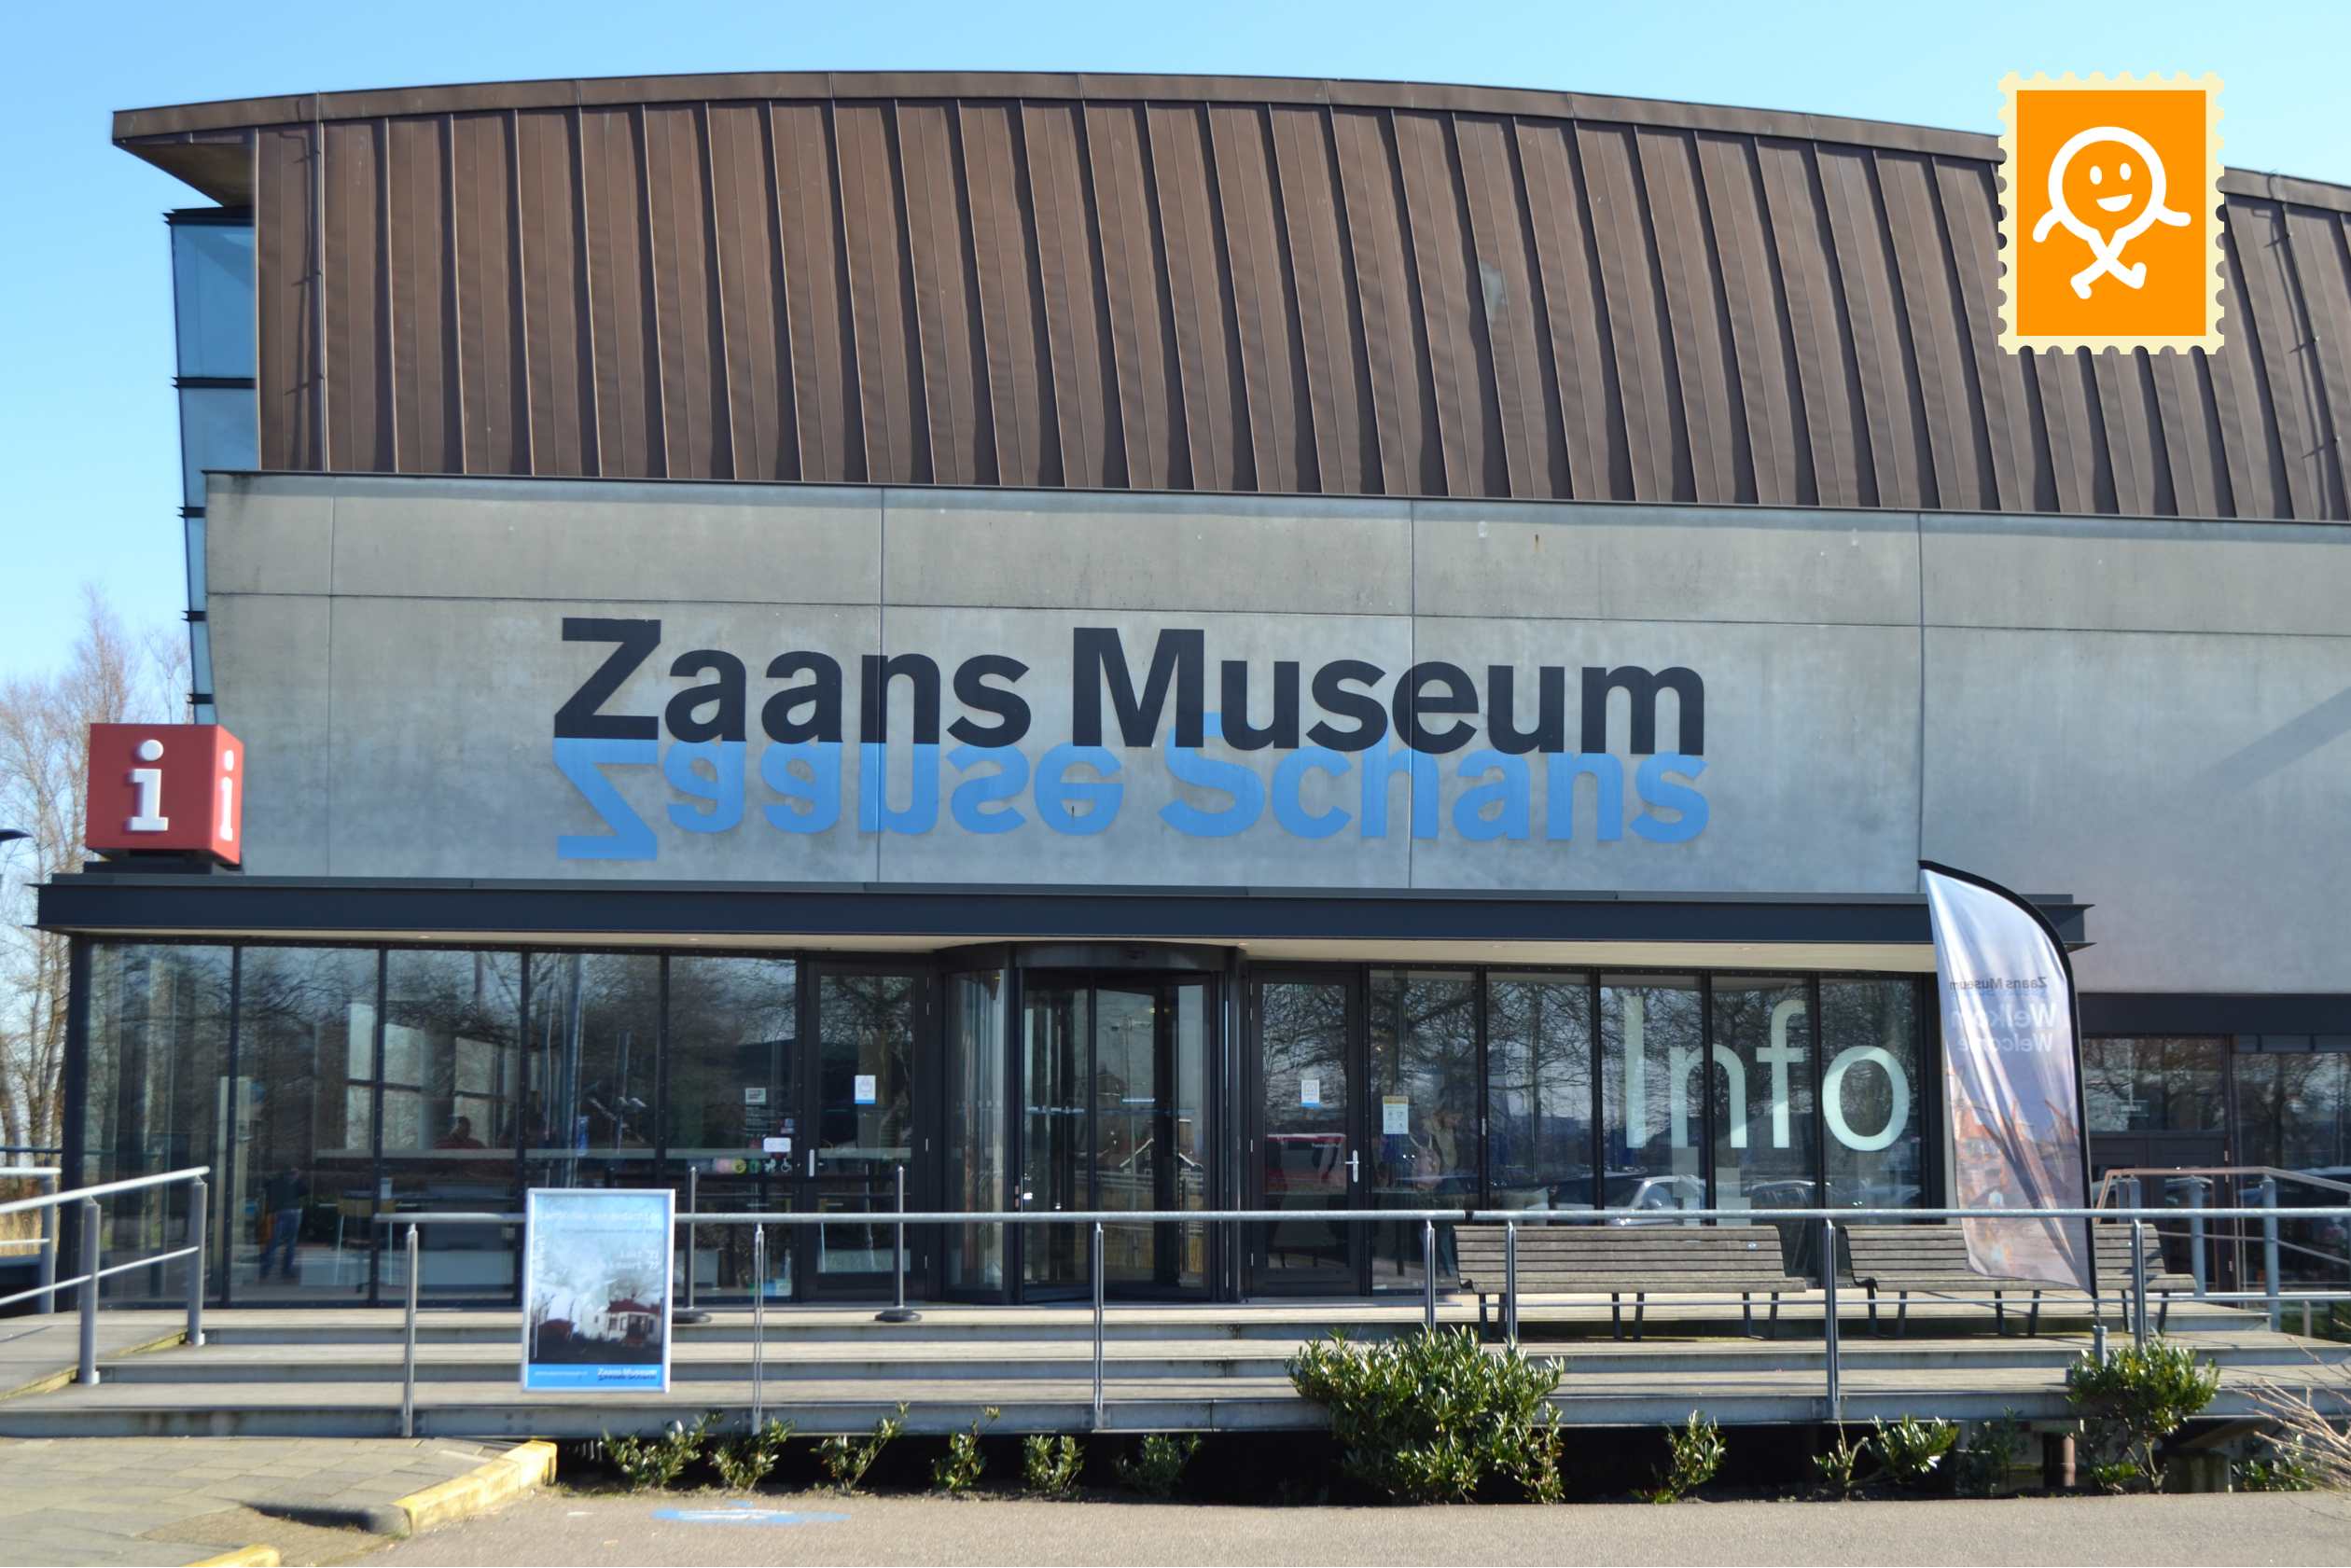 Zaanse Schans windmills mills discover self-guided tour on Zaanse Schans